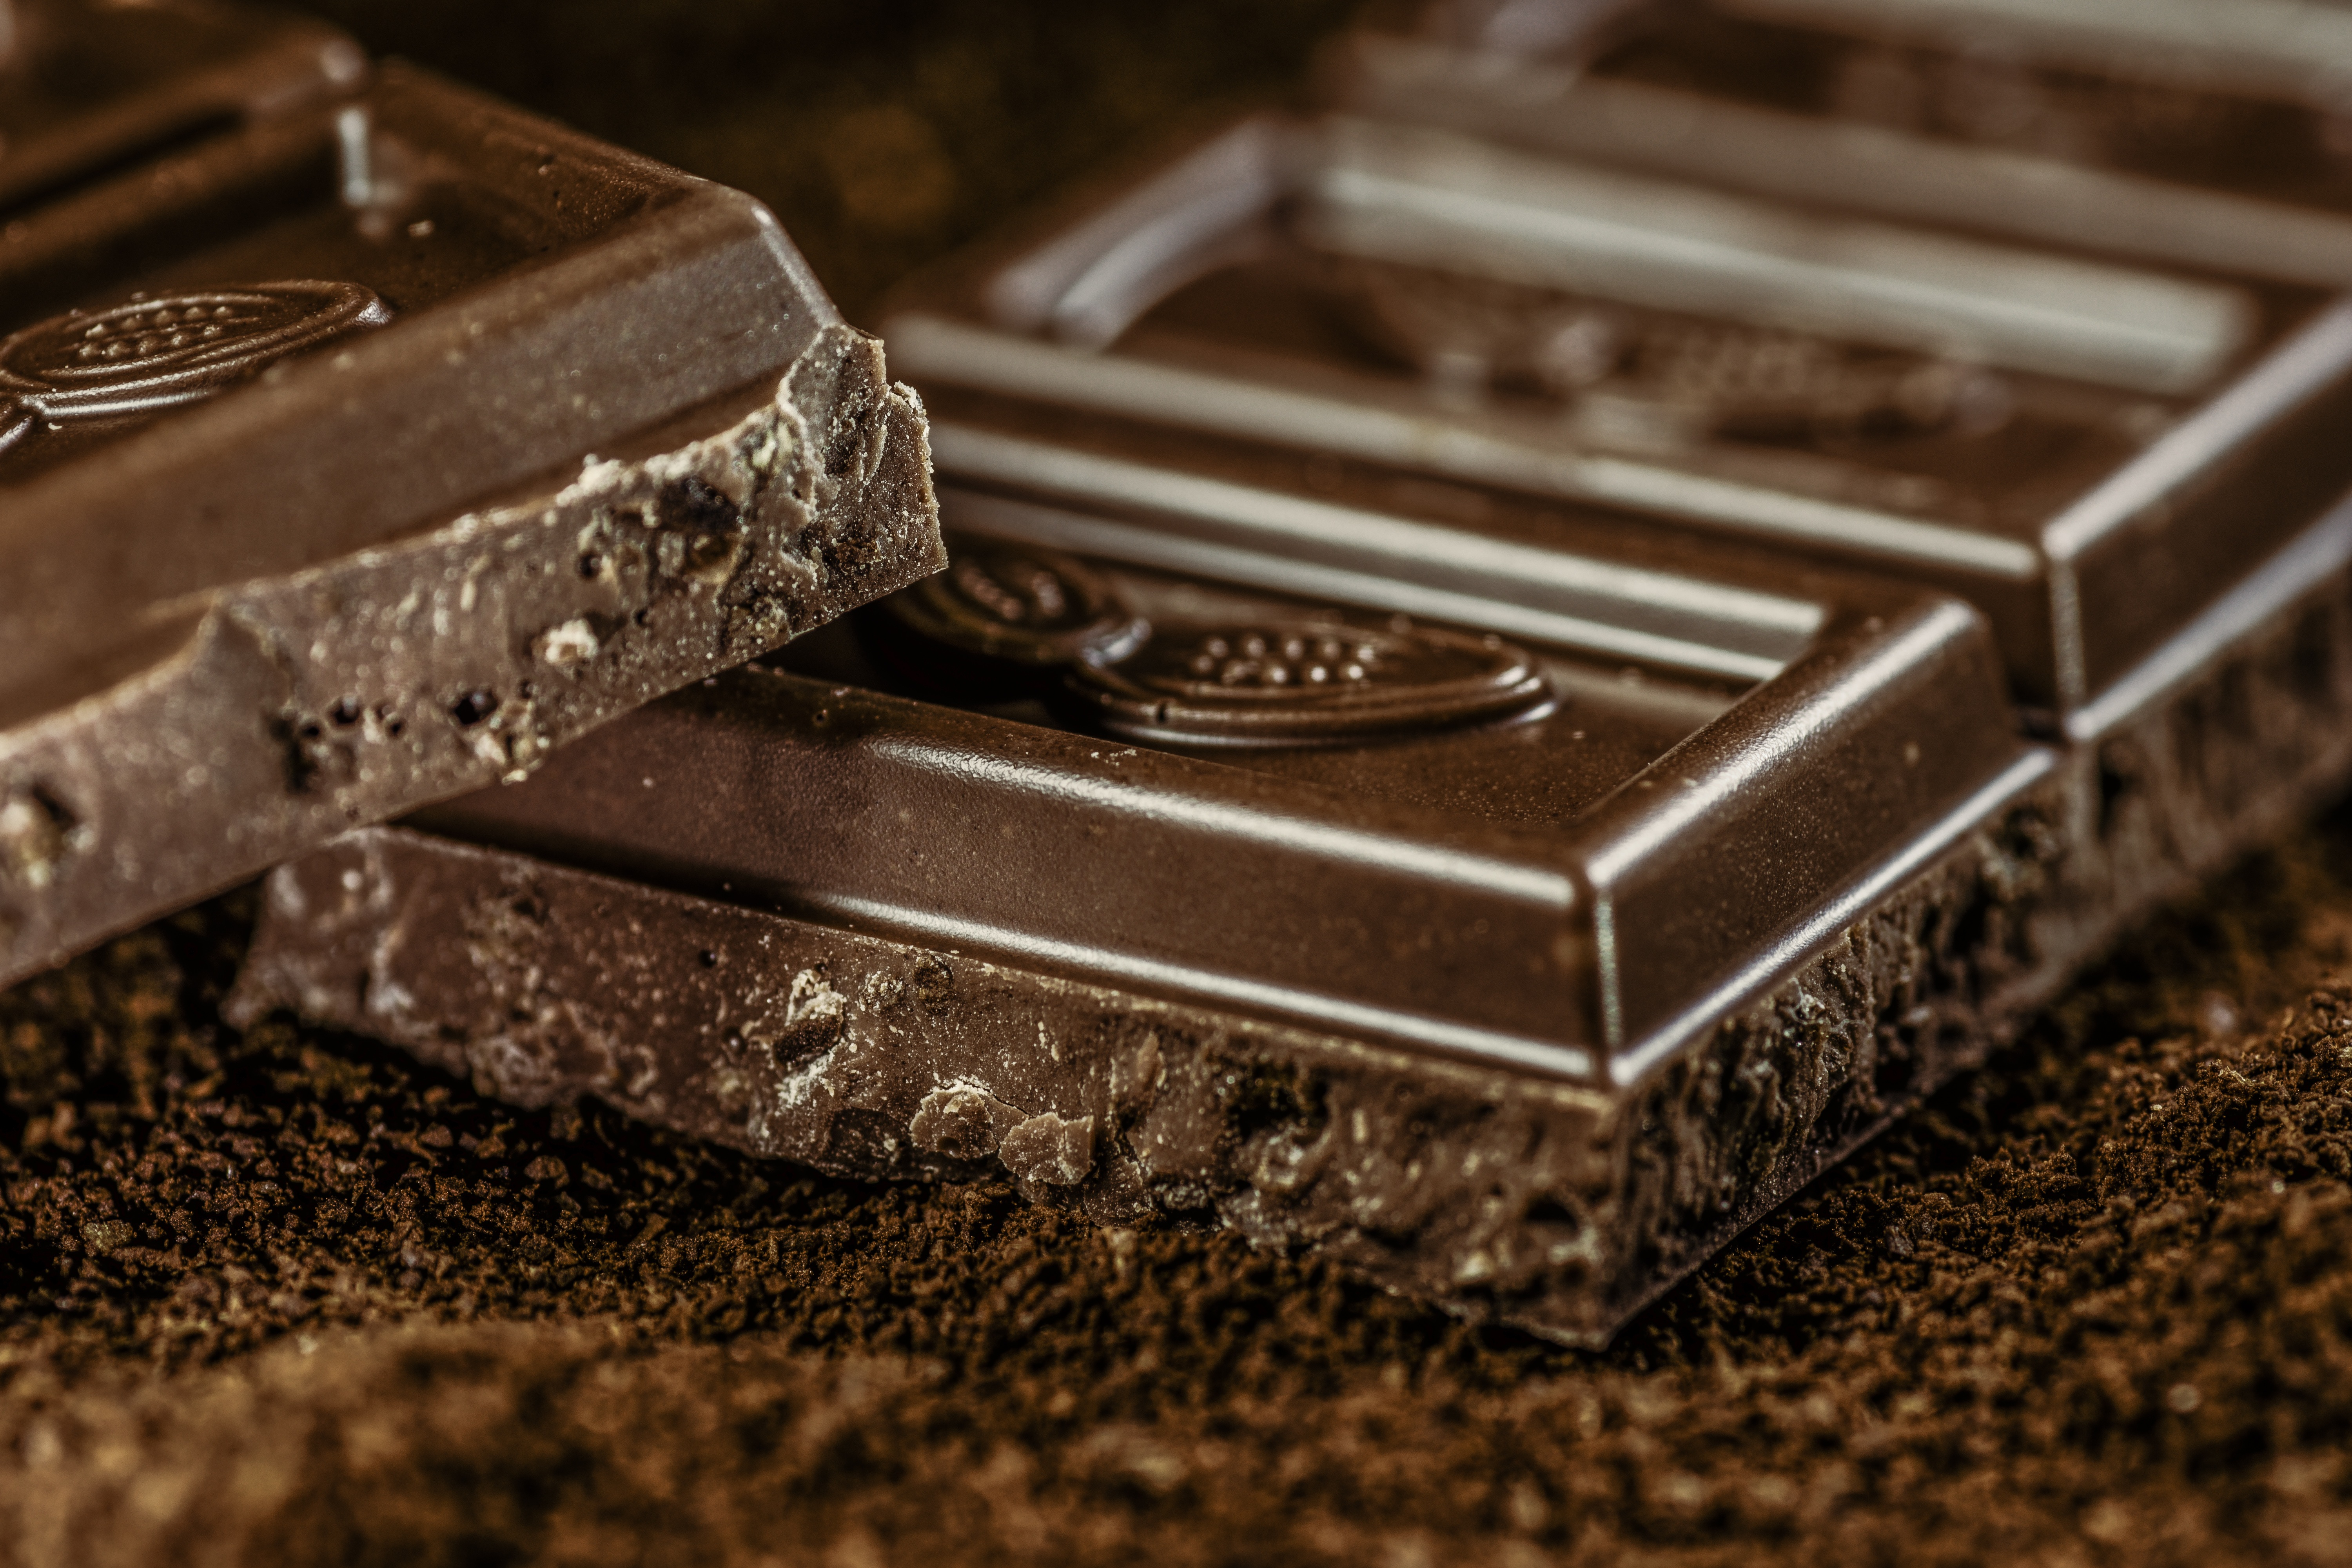 免费照片一张黑巧克力垫子的照片。